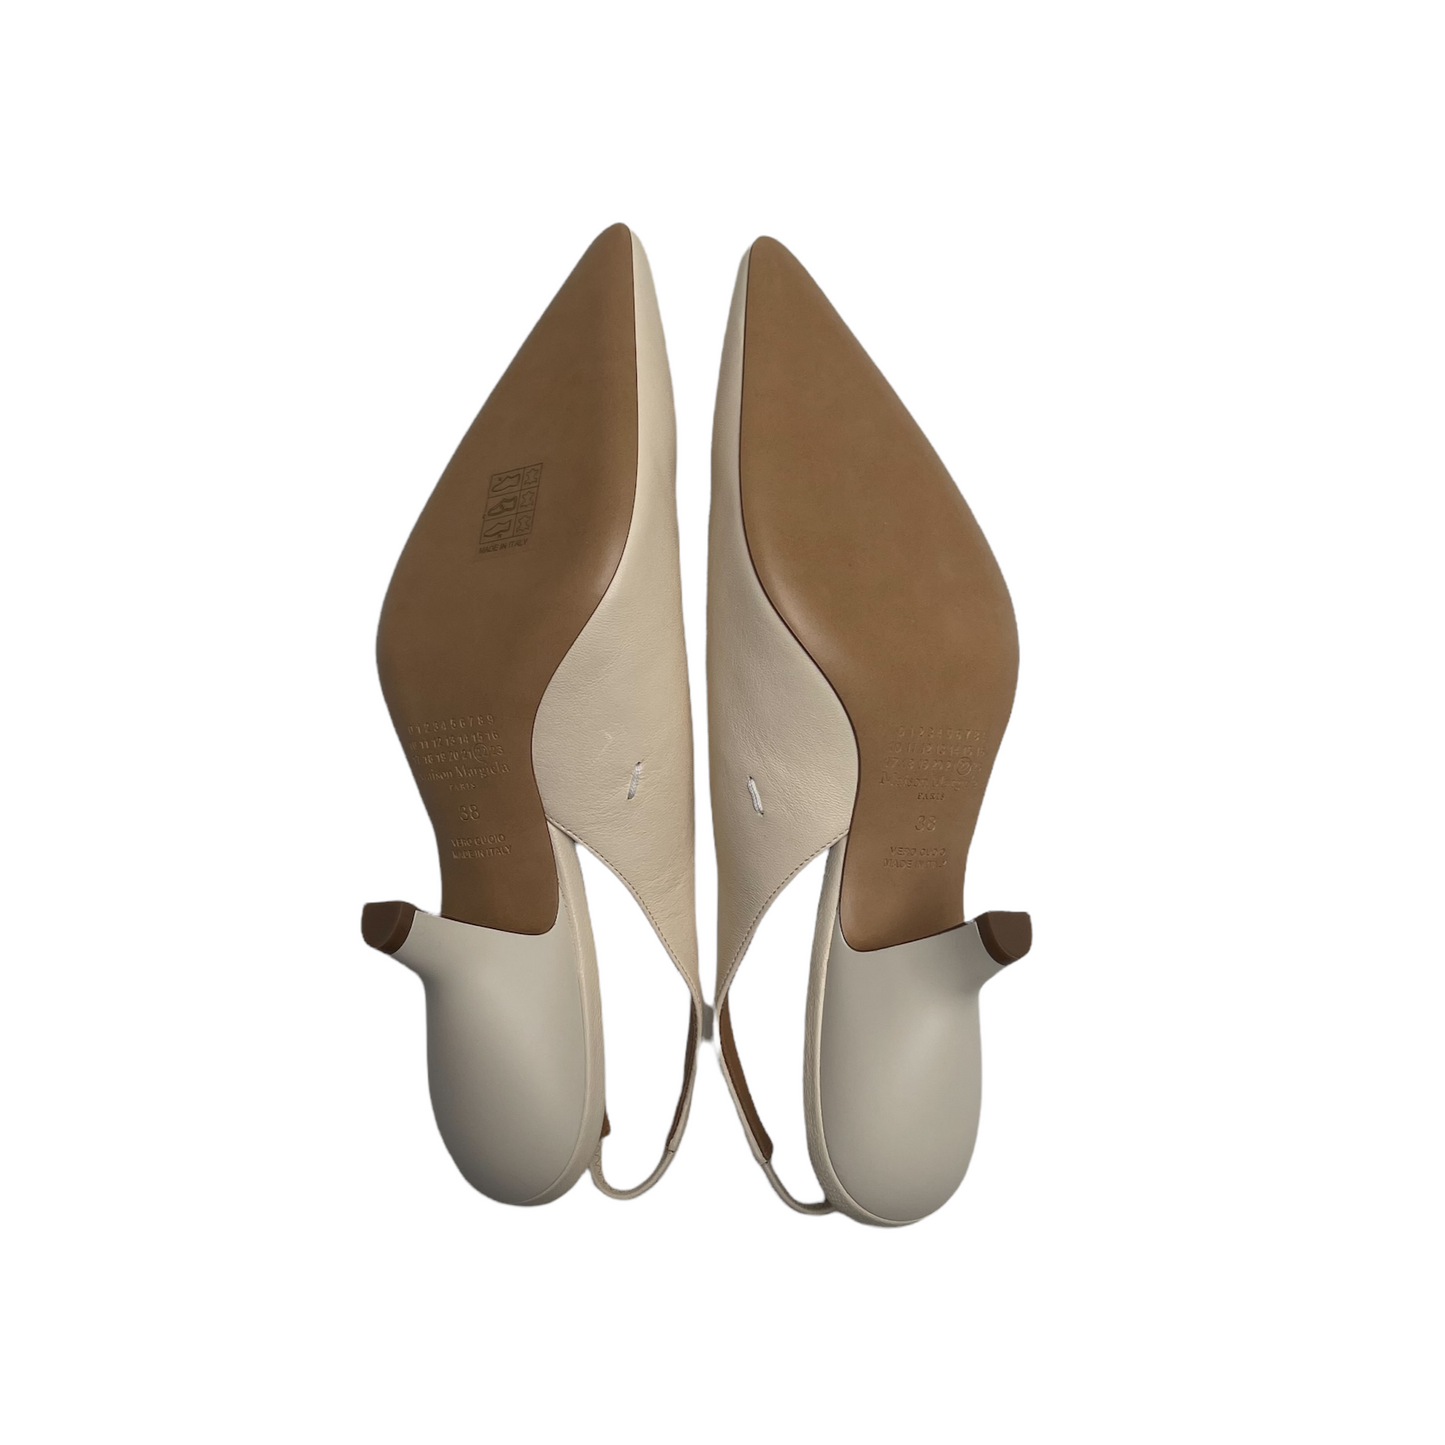 Cream Leather Kitten Heels - 7.5